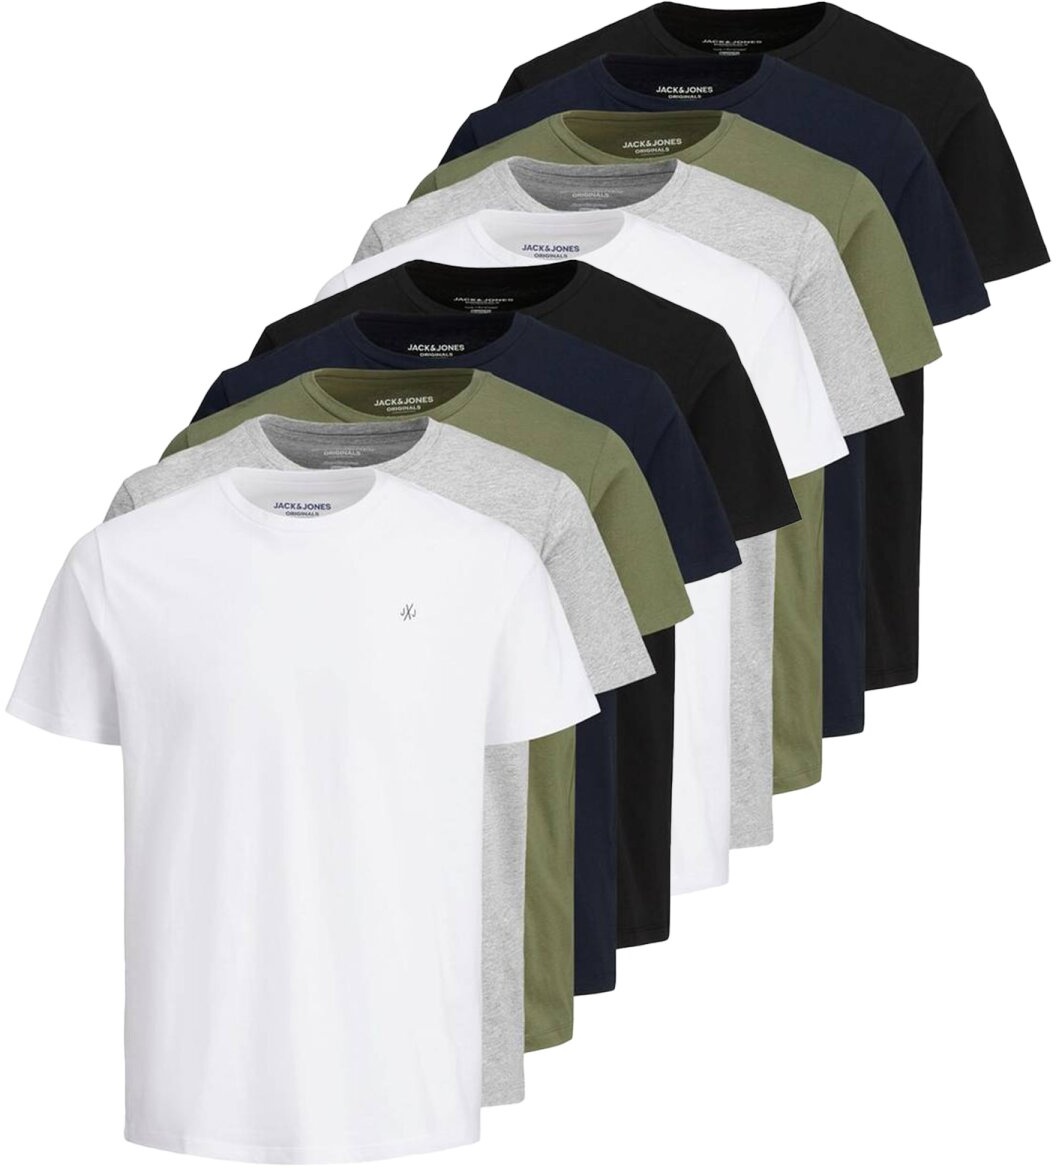 JACK&JONES Herren T-Shirt, 10er Pack - JORJXJ, T-Shirt, kurzarm, Rundhals, Baumwolle, Logo, einfarbig Weiß/Grau/Grün/Blau/Schwarz M